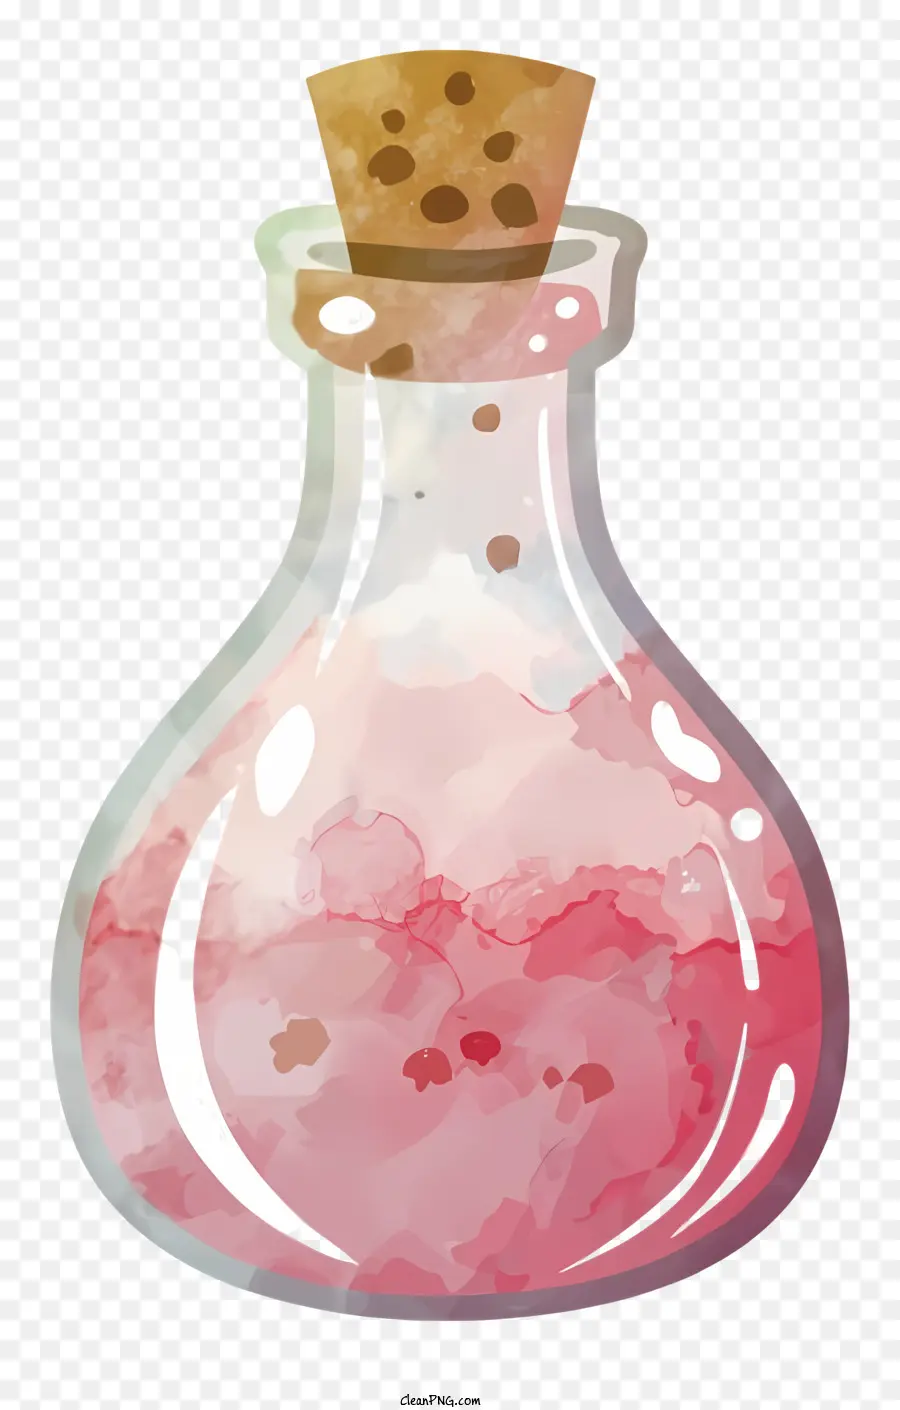 Cartoonglas Flasche Pink Flüssigkeit Kork Stopper Blasen - Transparente Glasflasche mit rosa Flüssigkeit gefüllt